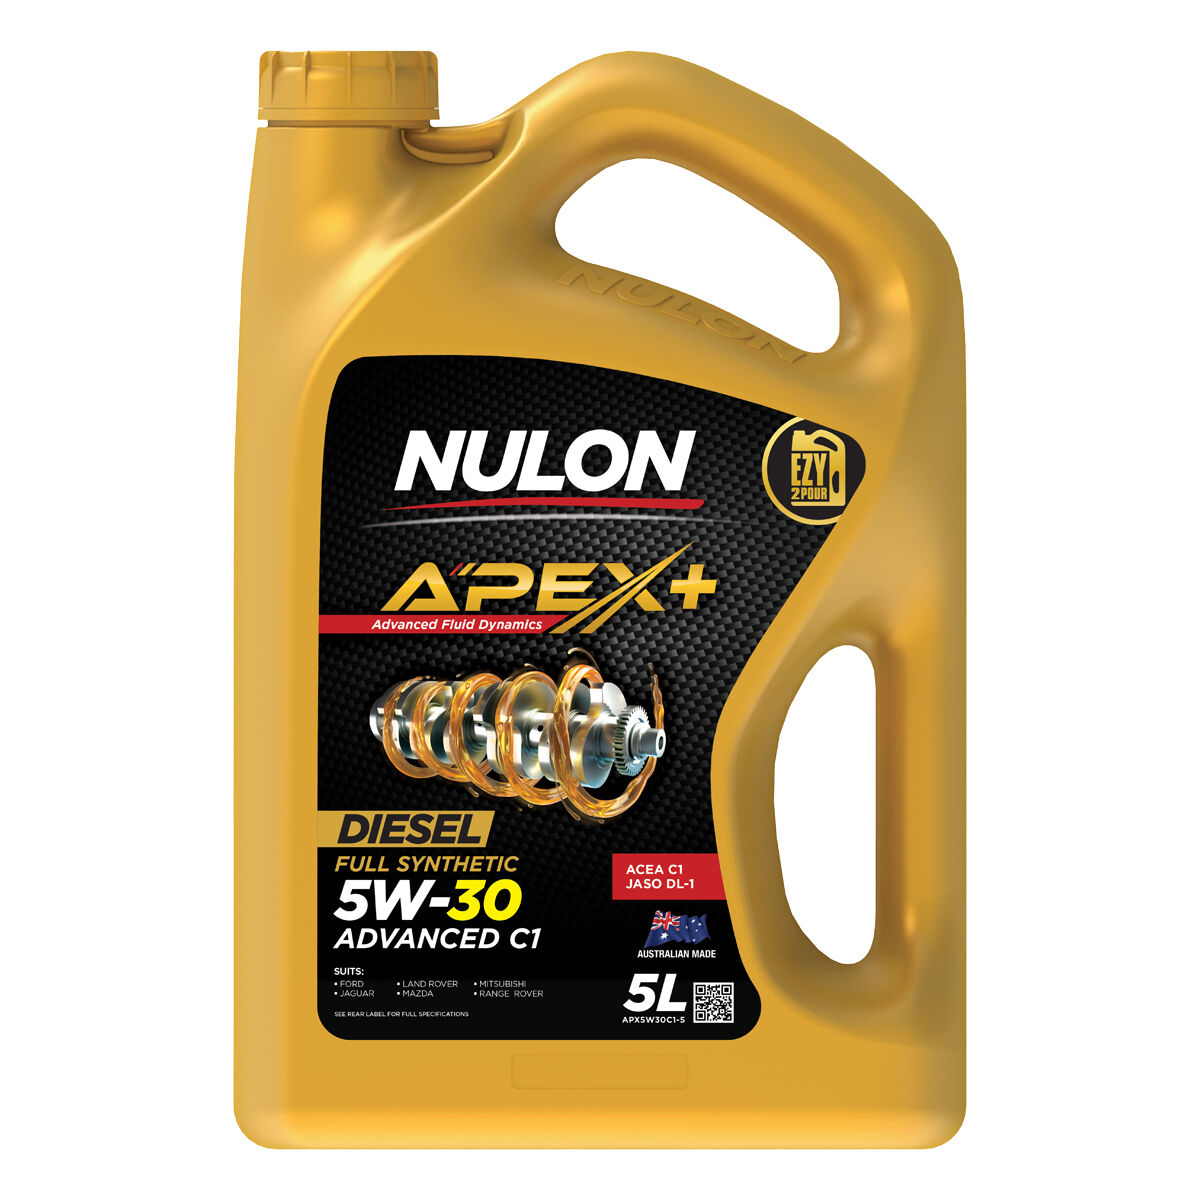 Nulon Apex+ 5W-30 Advanced C1 5 Litre | Supercheap Auto New Zealand